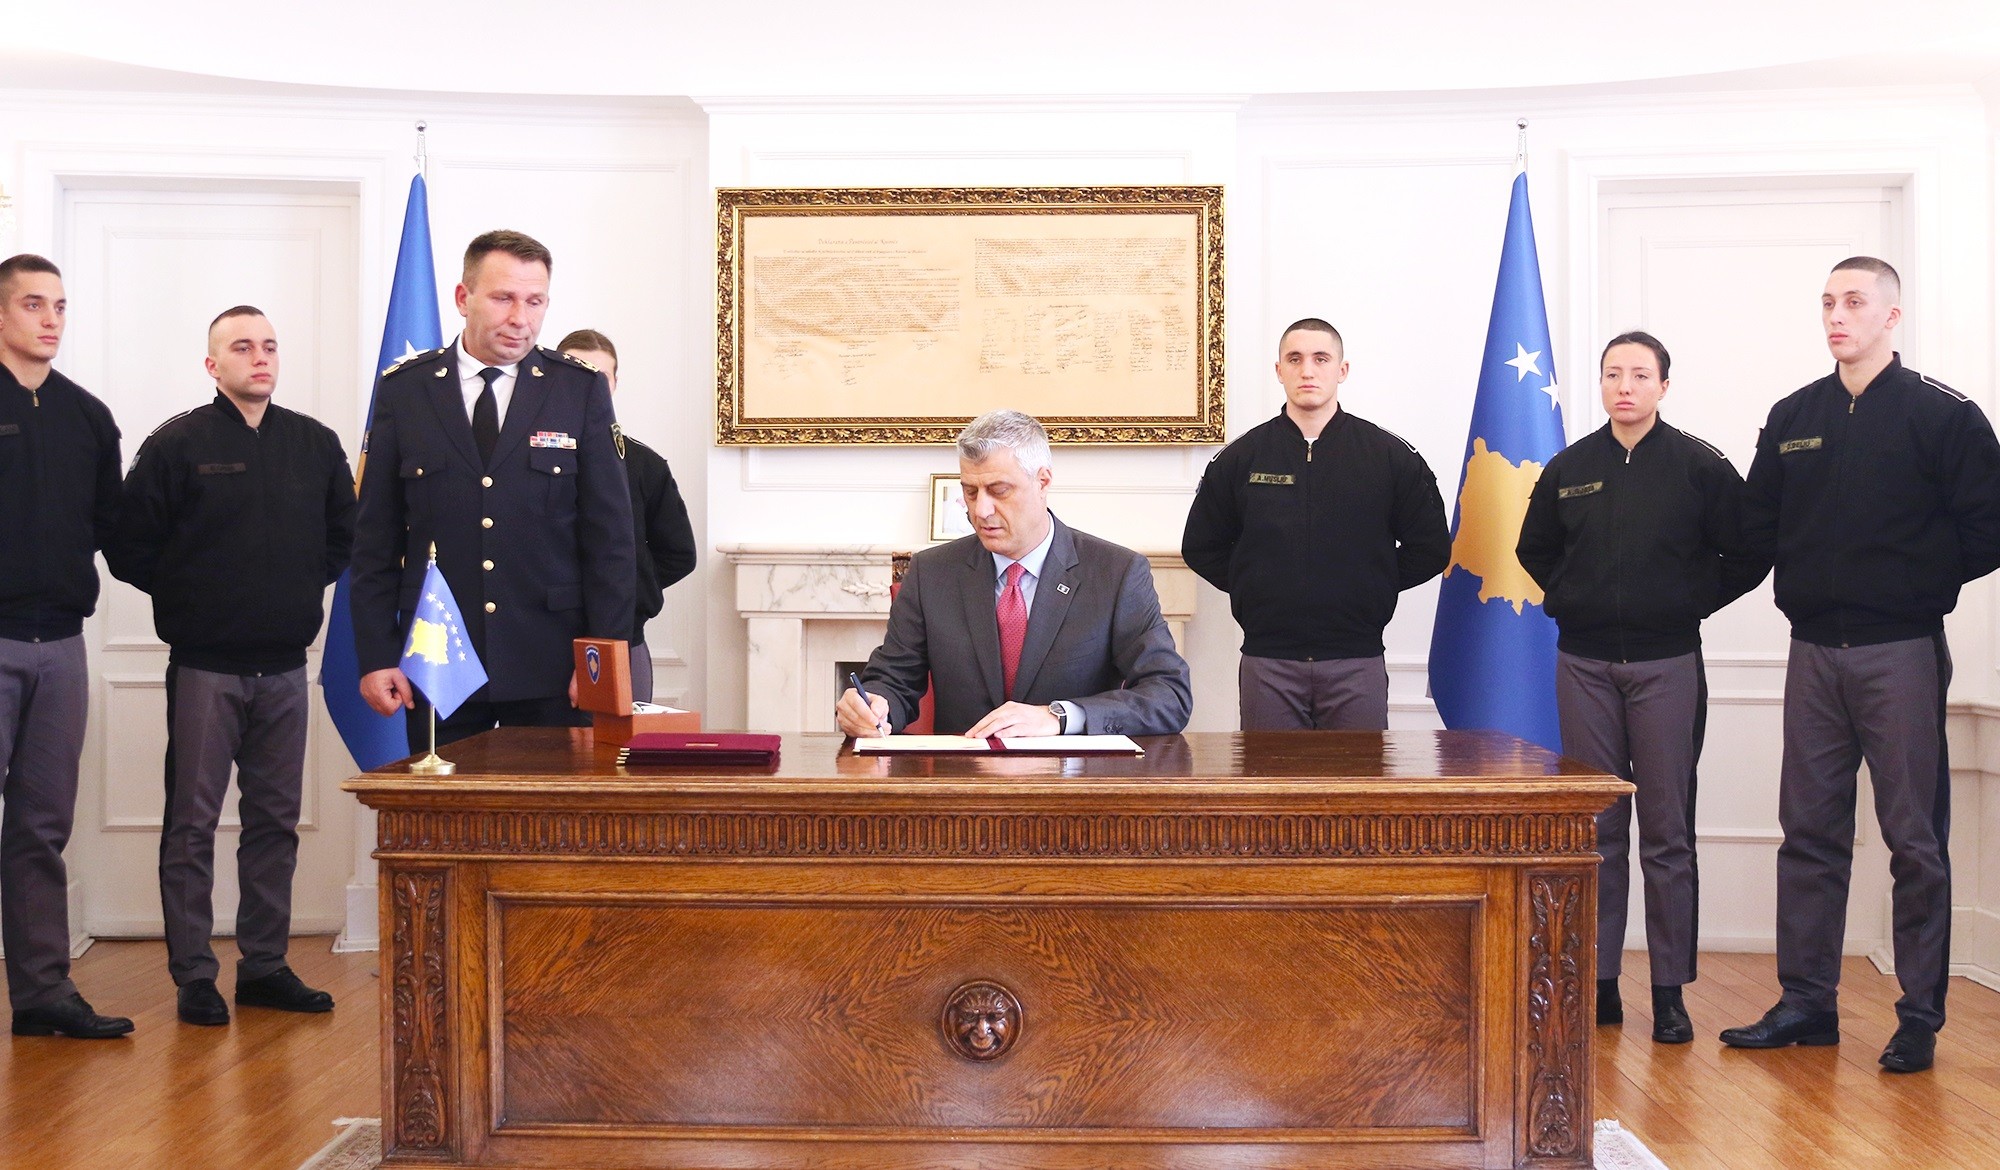 Presidenti dekreton ligjet për Ushtrinë e Kosovës